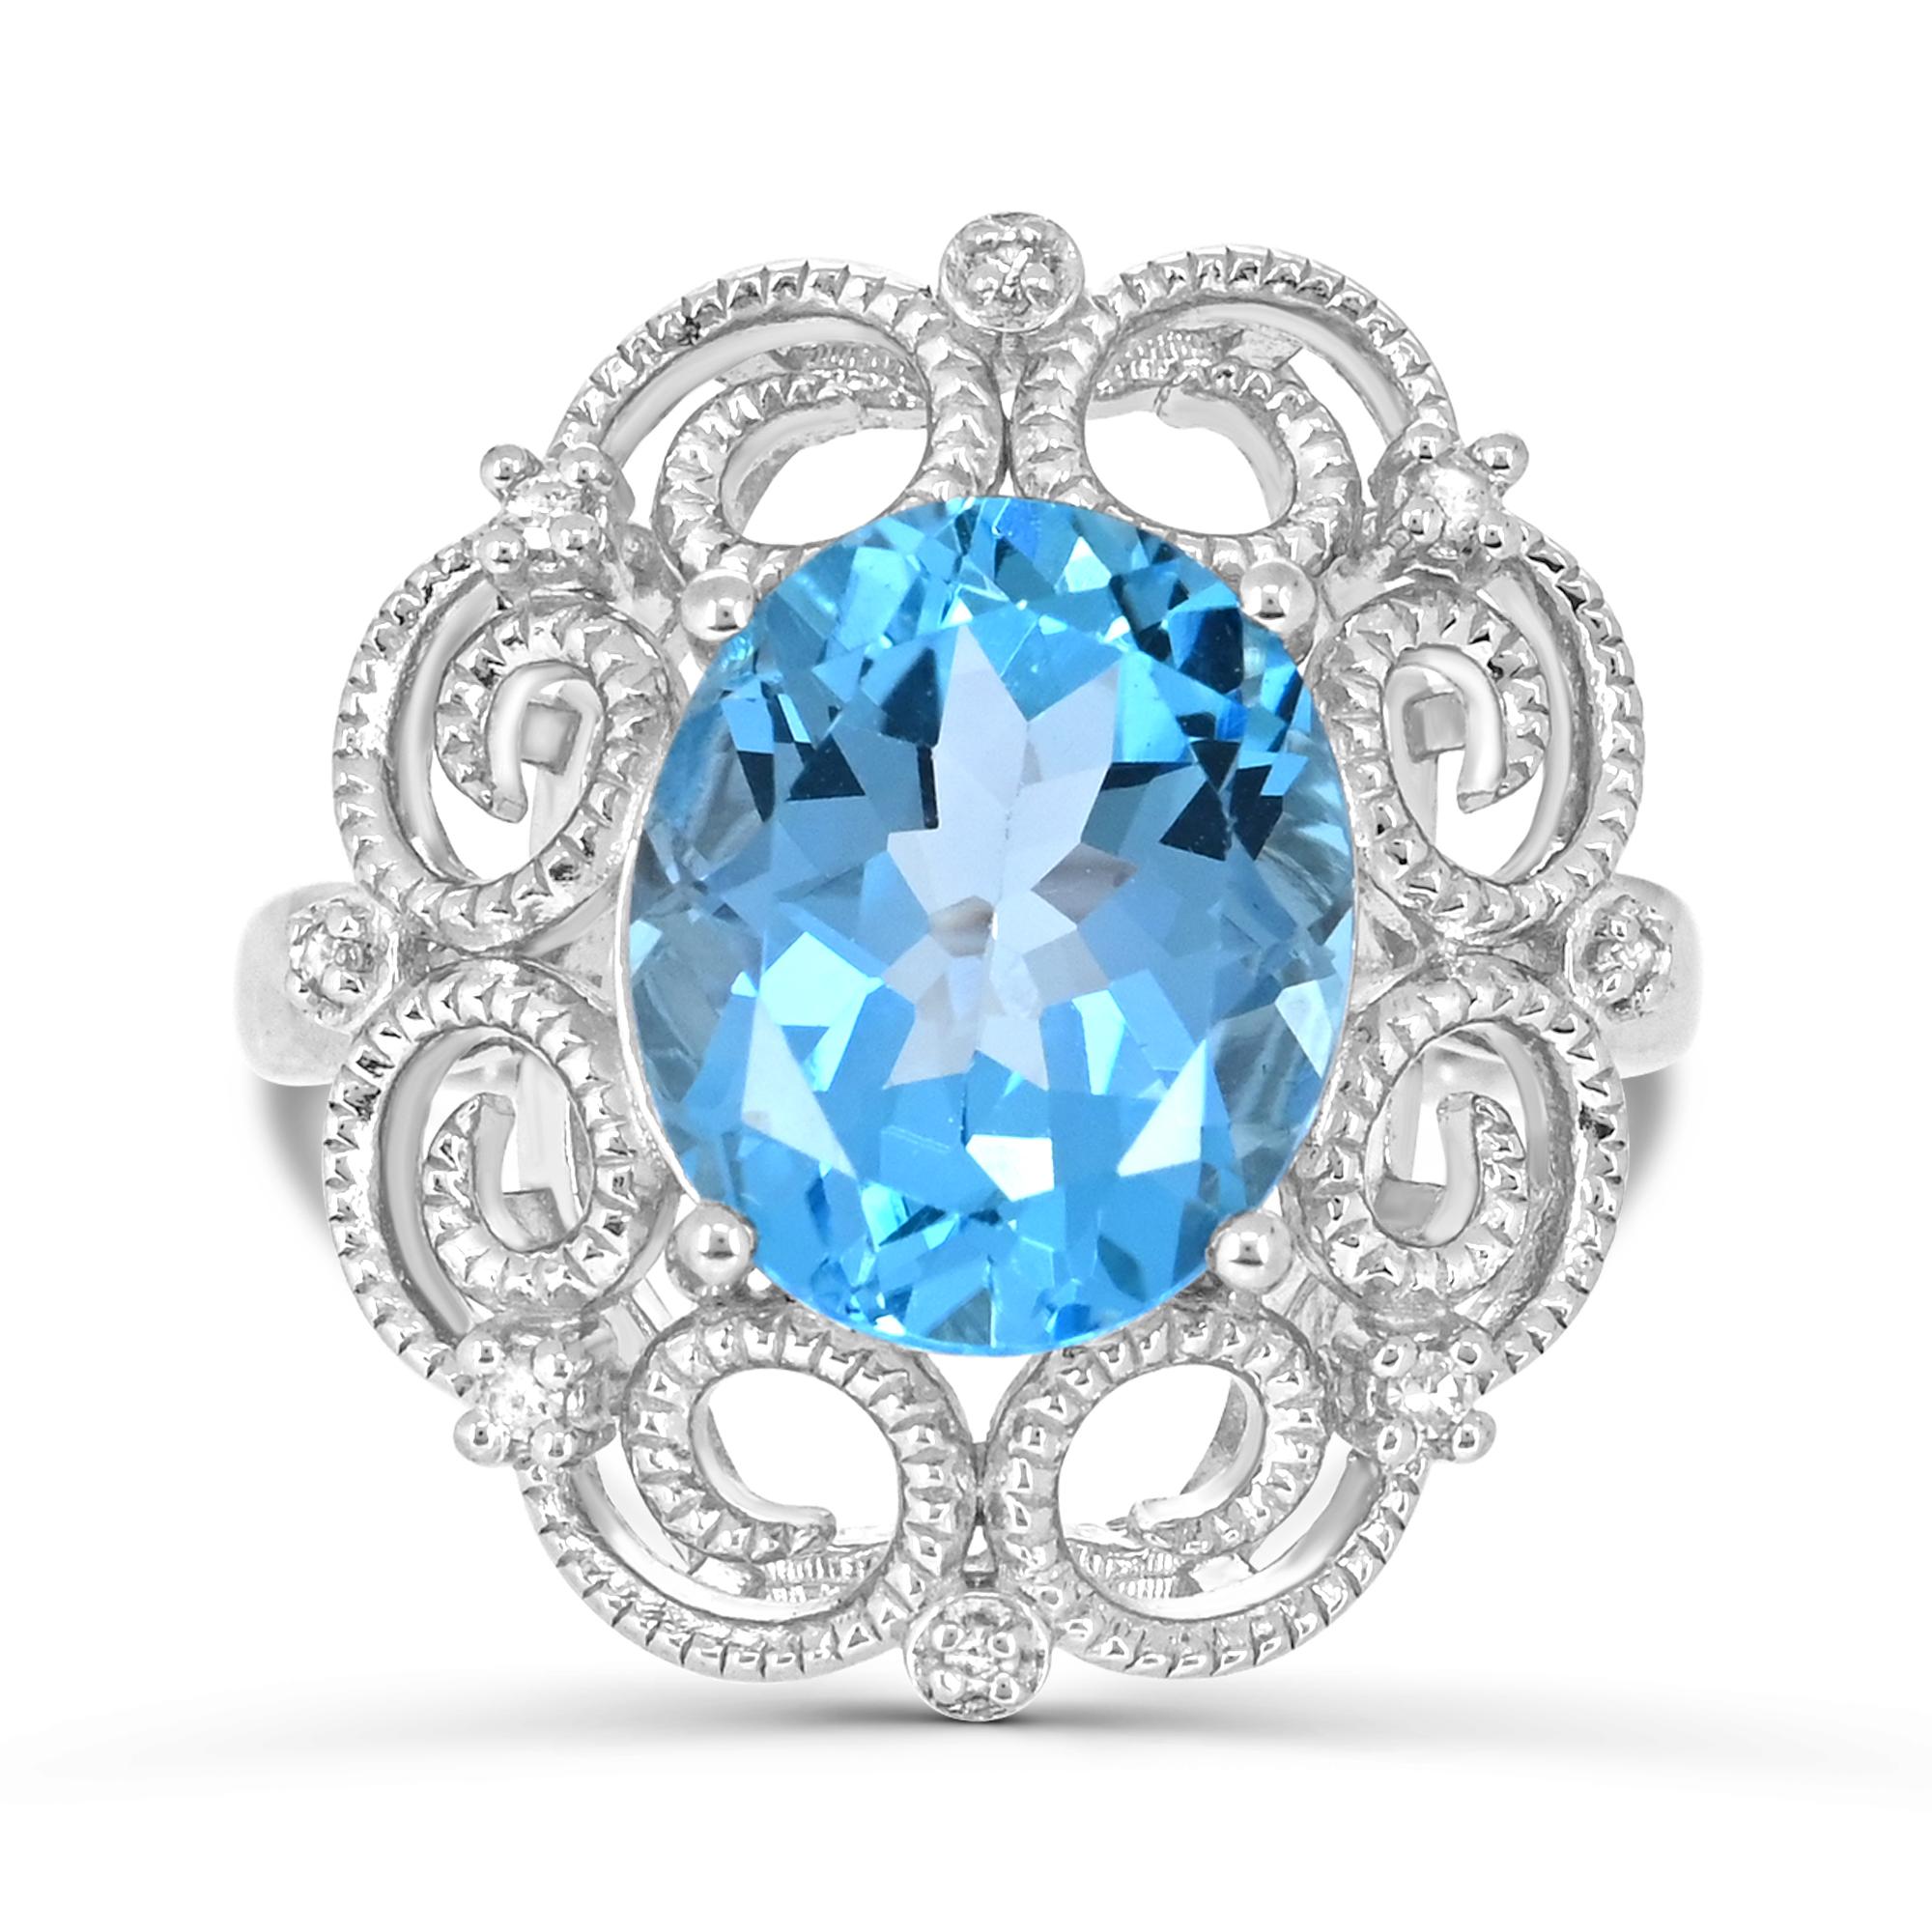 Gönnen Sie sich die Eleganz unseres ovalen Schweizer Blautopas und Diamanten Akzent Retro Border Sterling Silber Ring. Dieser mit viel Liebe zum Detail gefertigte Ring besticht durch die Kombination aus einem ovalen Schweizer Blautopas, der von